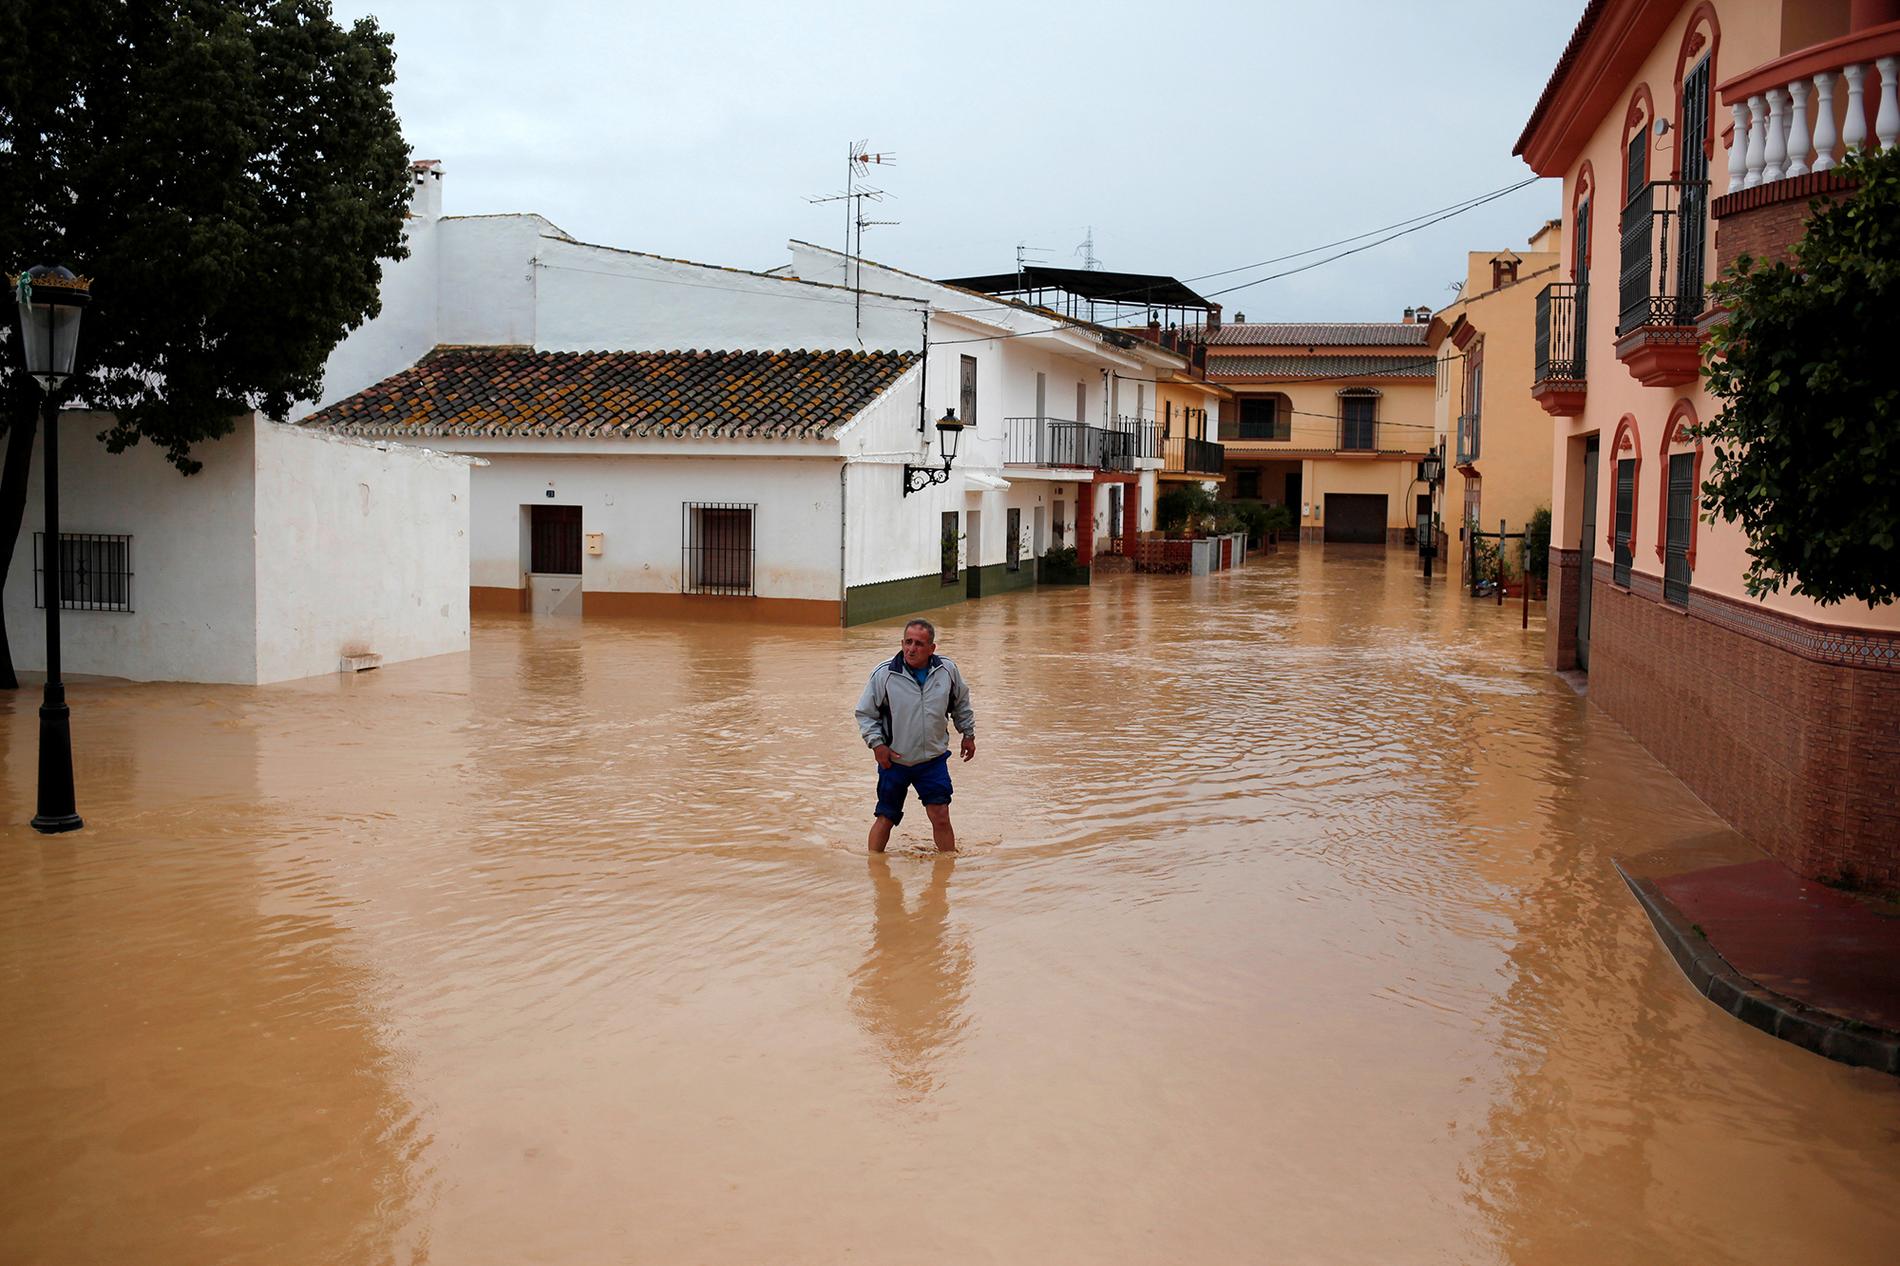 En man som övergivit sitt hem vadar genom de översvämmade gatorna i Cartama, nära Malaga.